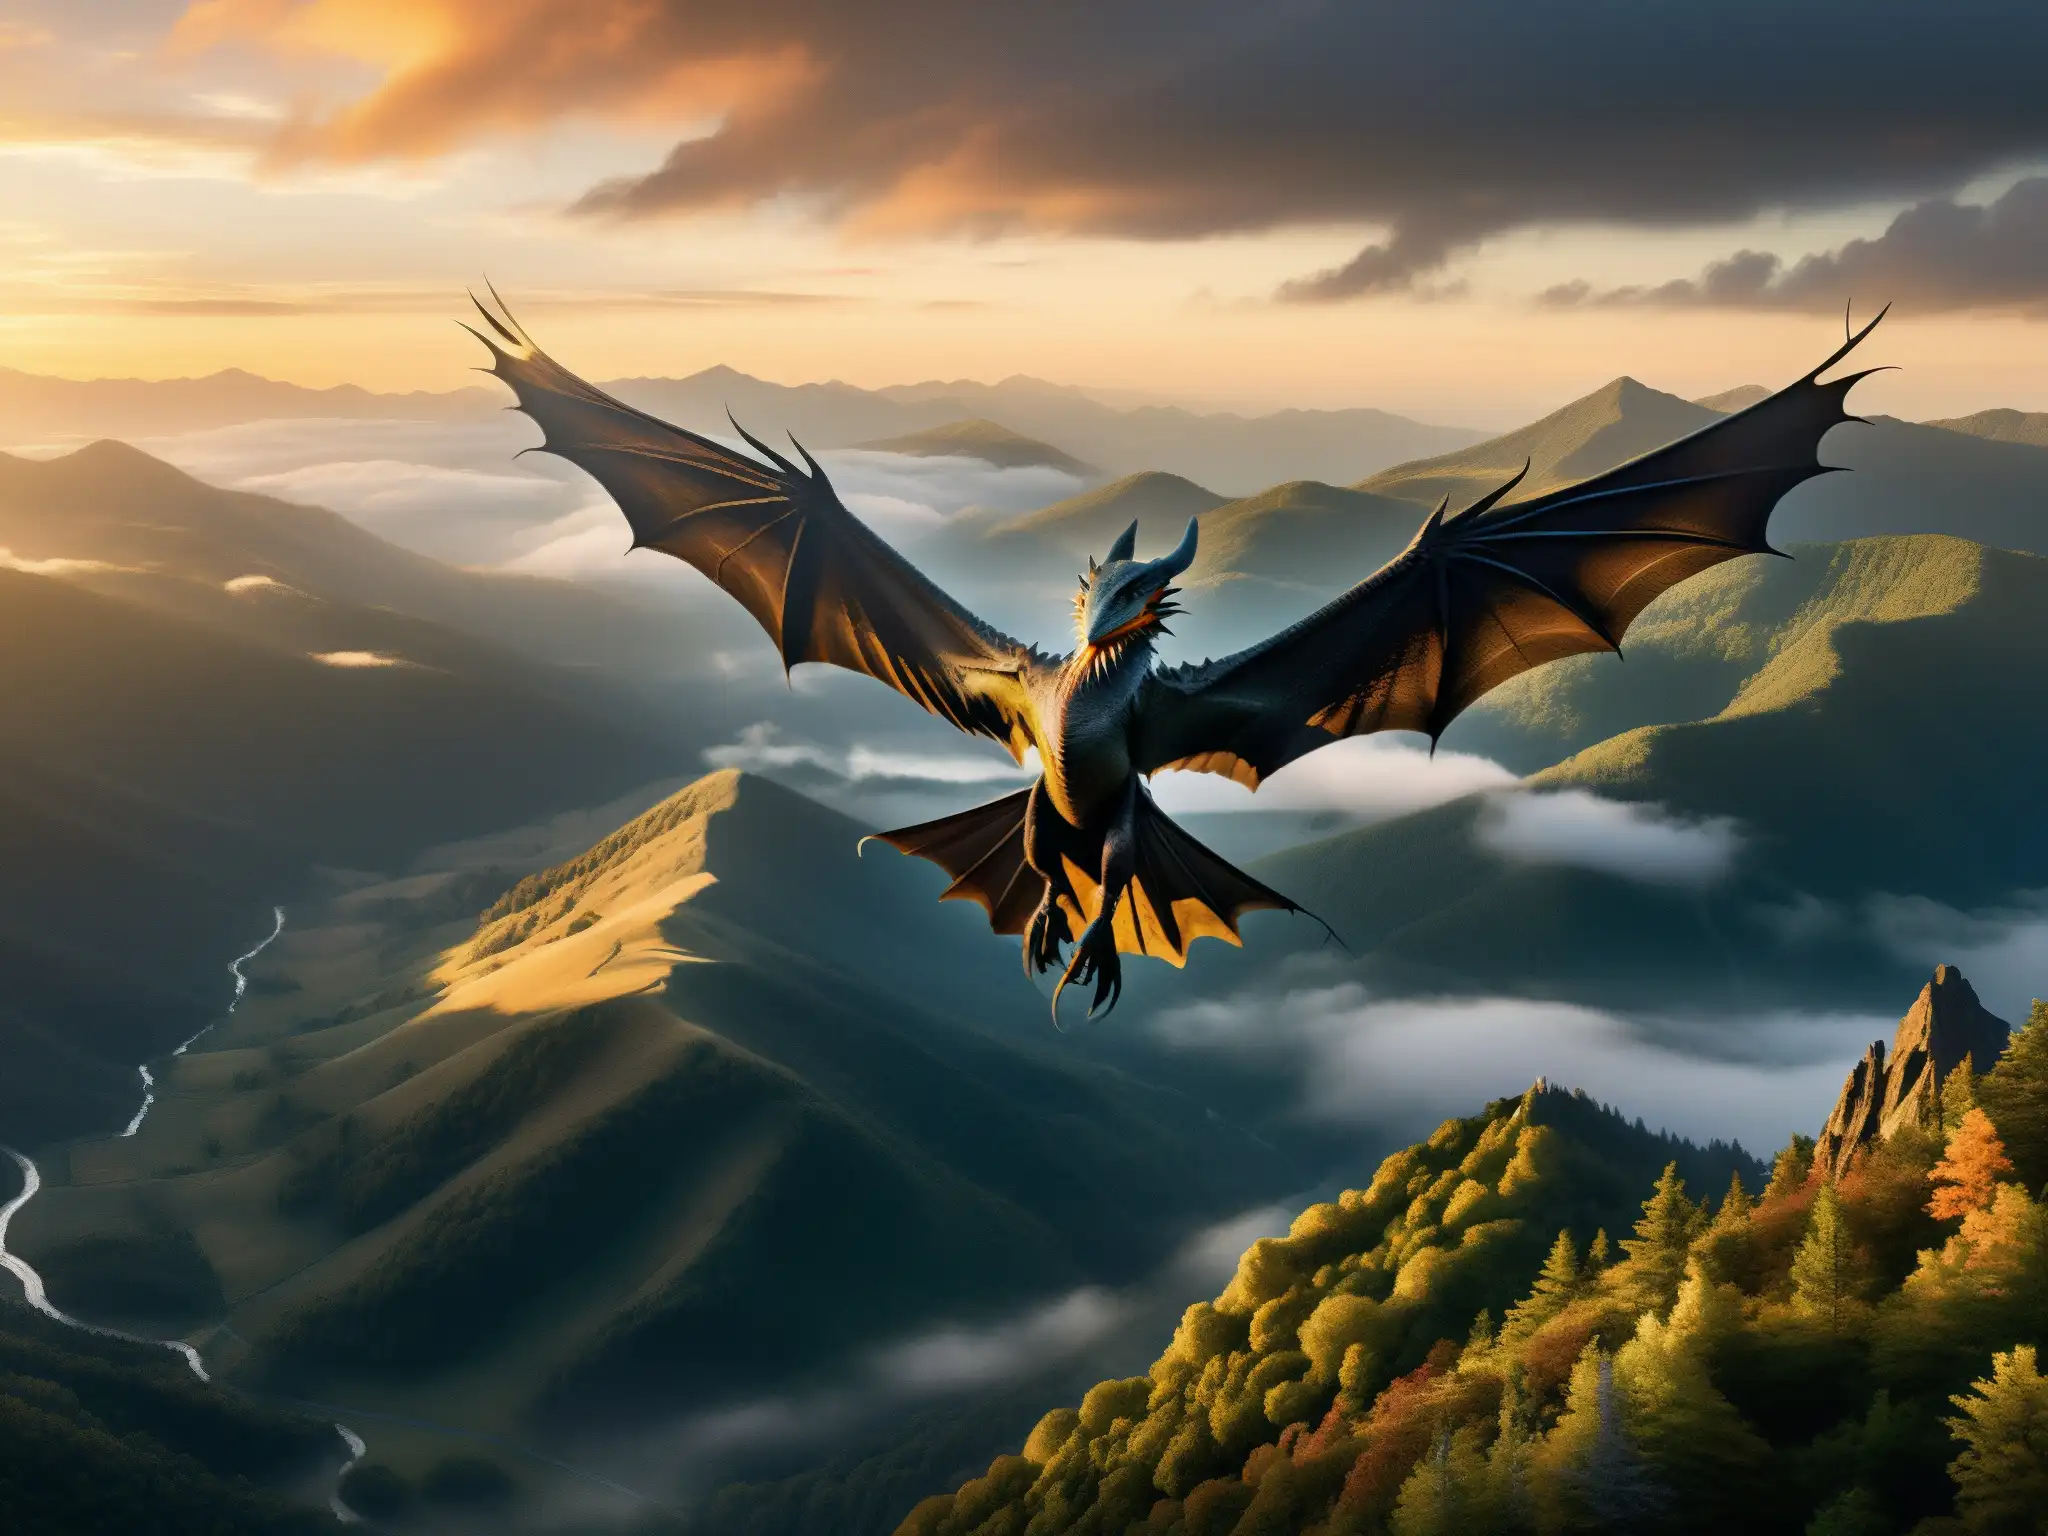 Silueta de un dragón de los Apalaches mito criatura surcando el cielo dorado entre las montañas neblinosas al amanecer, evocando misterio y asombro